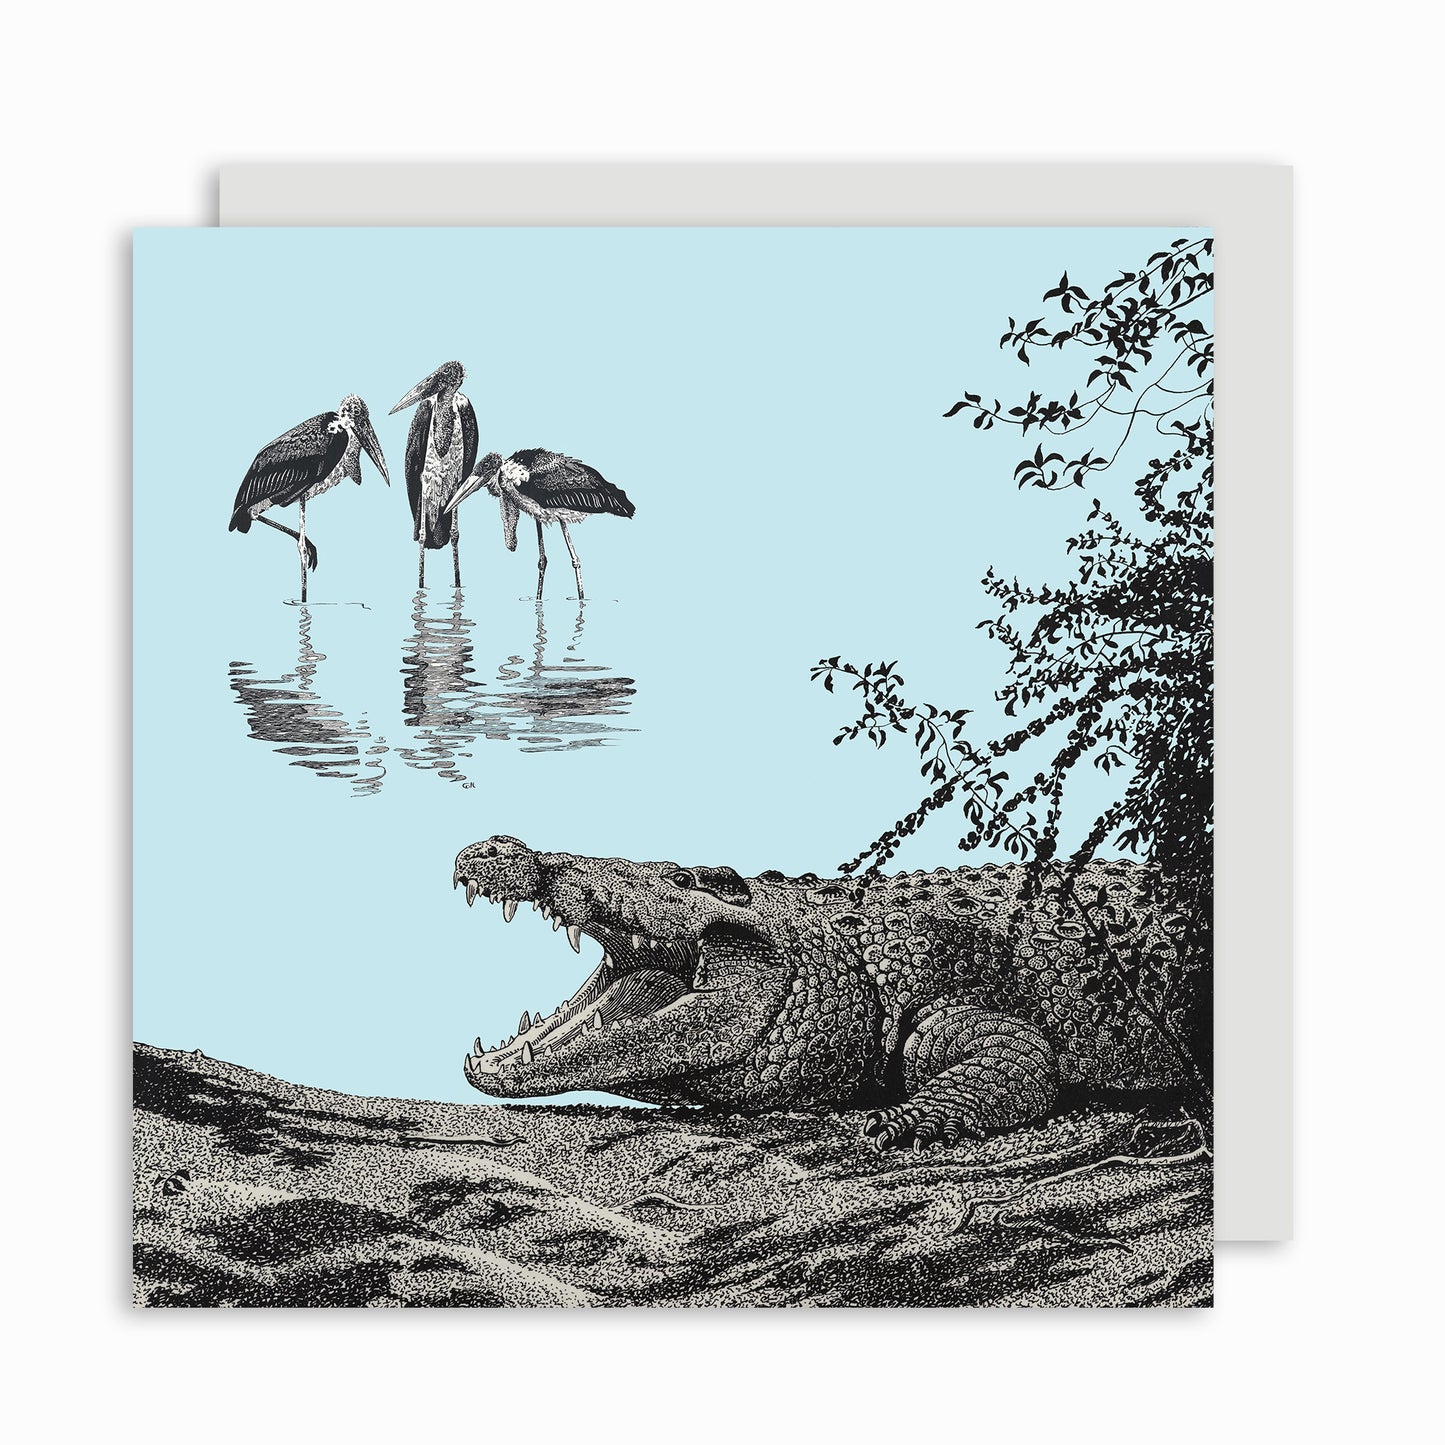 Marabou and Bull Crocodile - Greetings Card